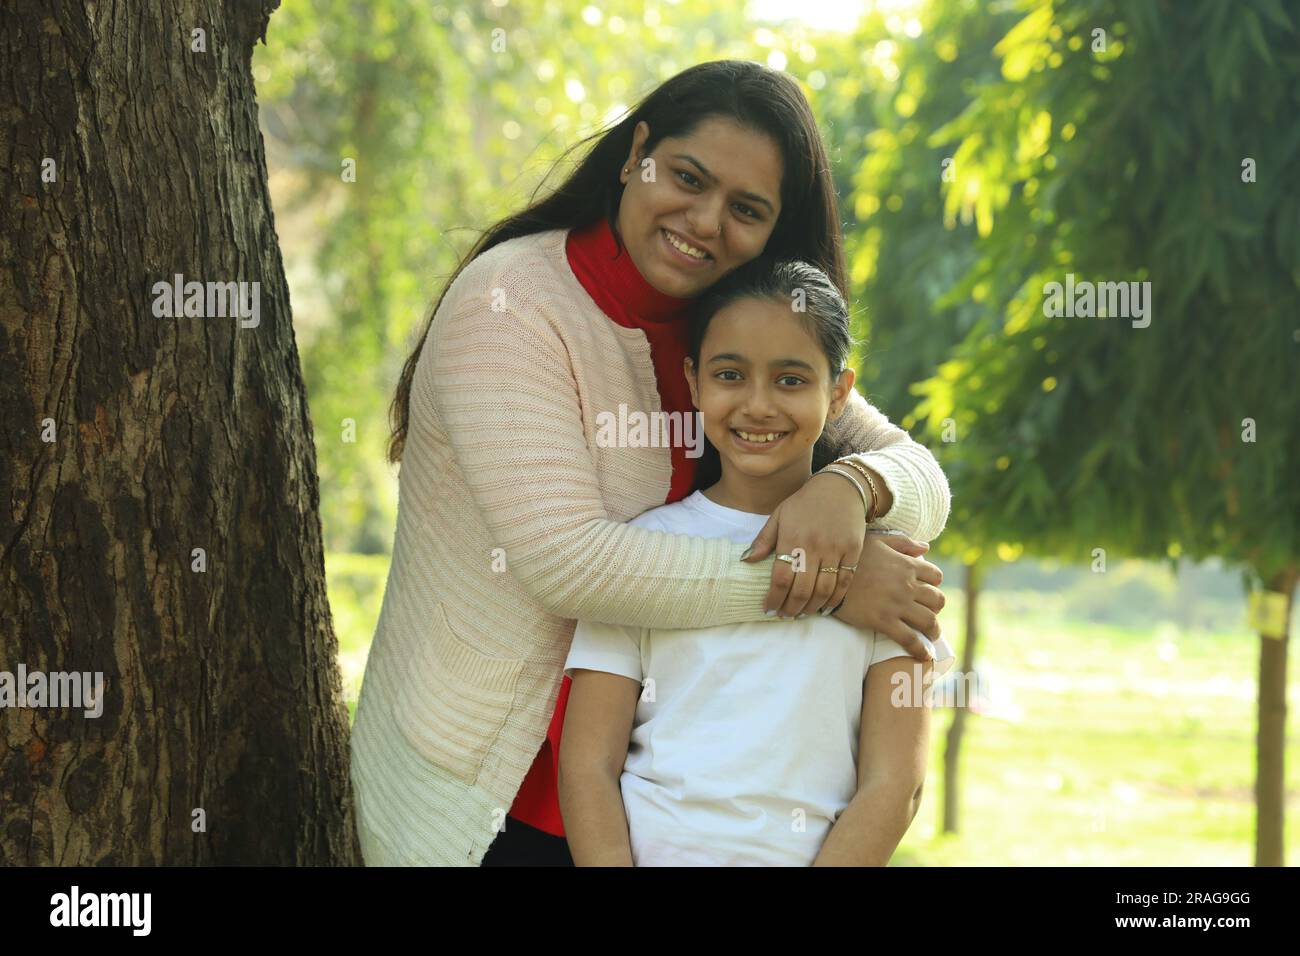 Madre e figlia indiane che si divertono insieme nel parco di giorno. La figlia è amata e si sente al sicuro con sua madre. Foto Stock